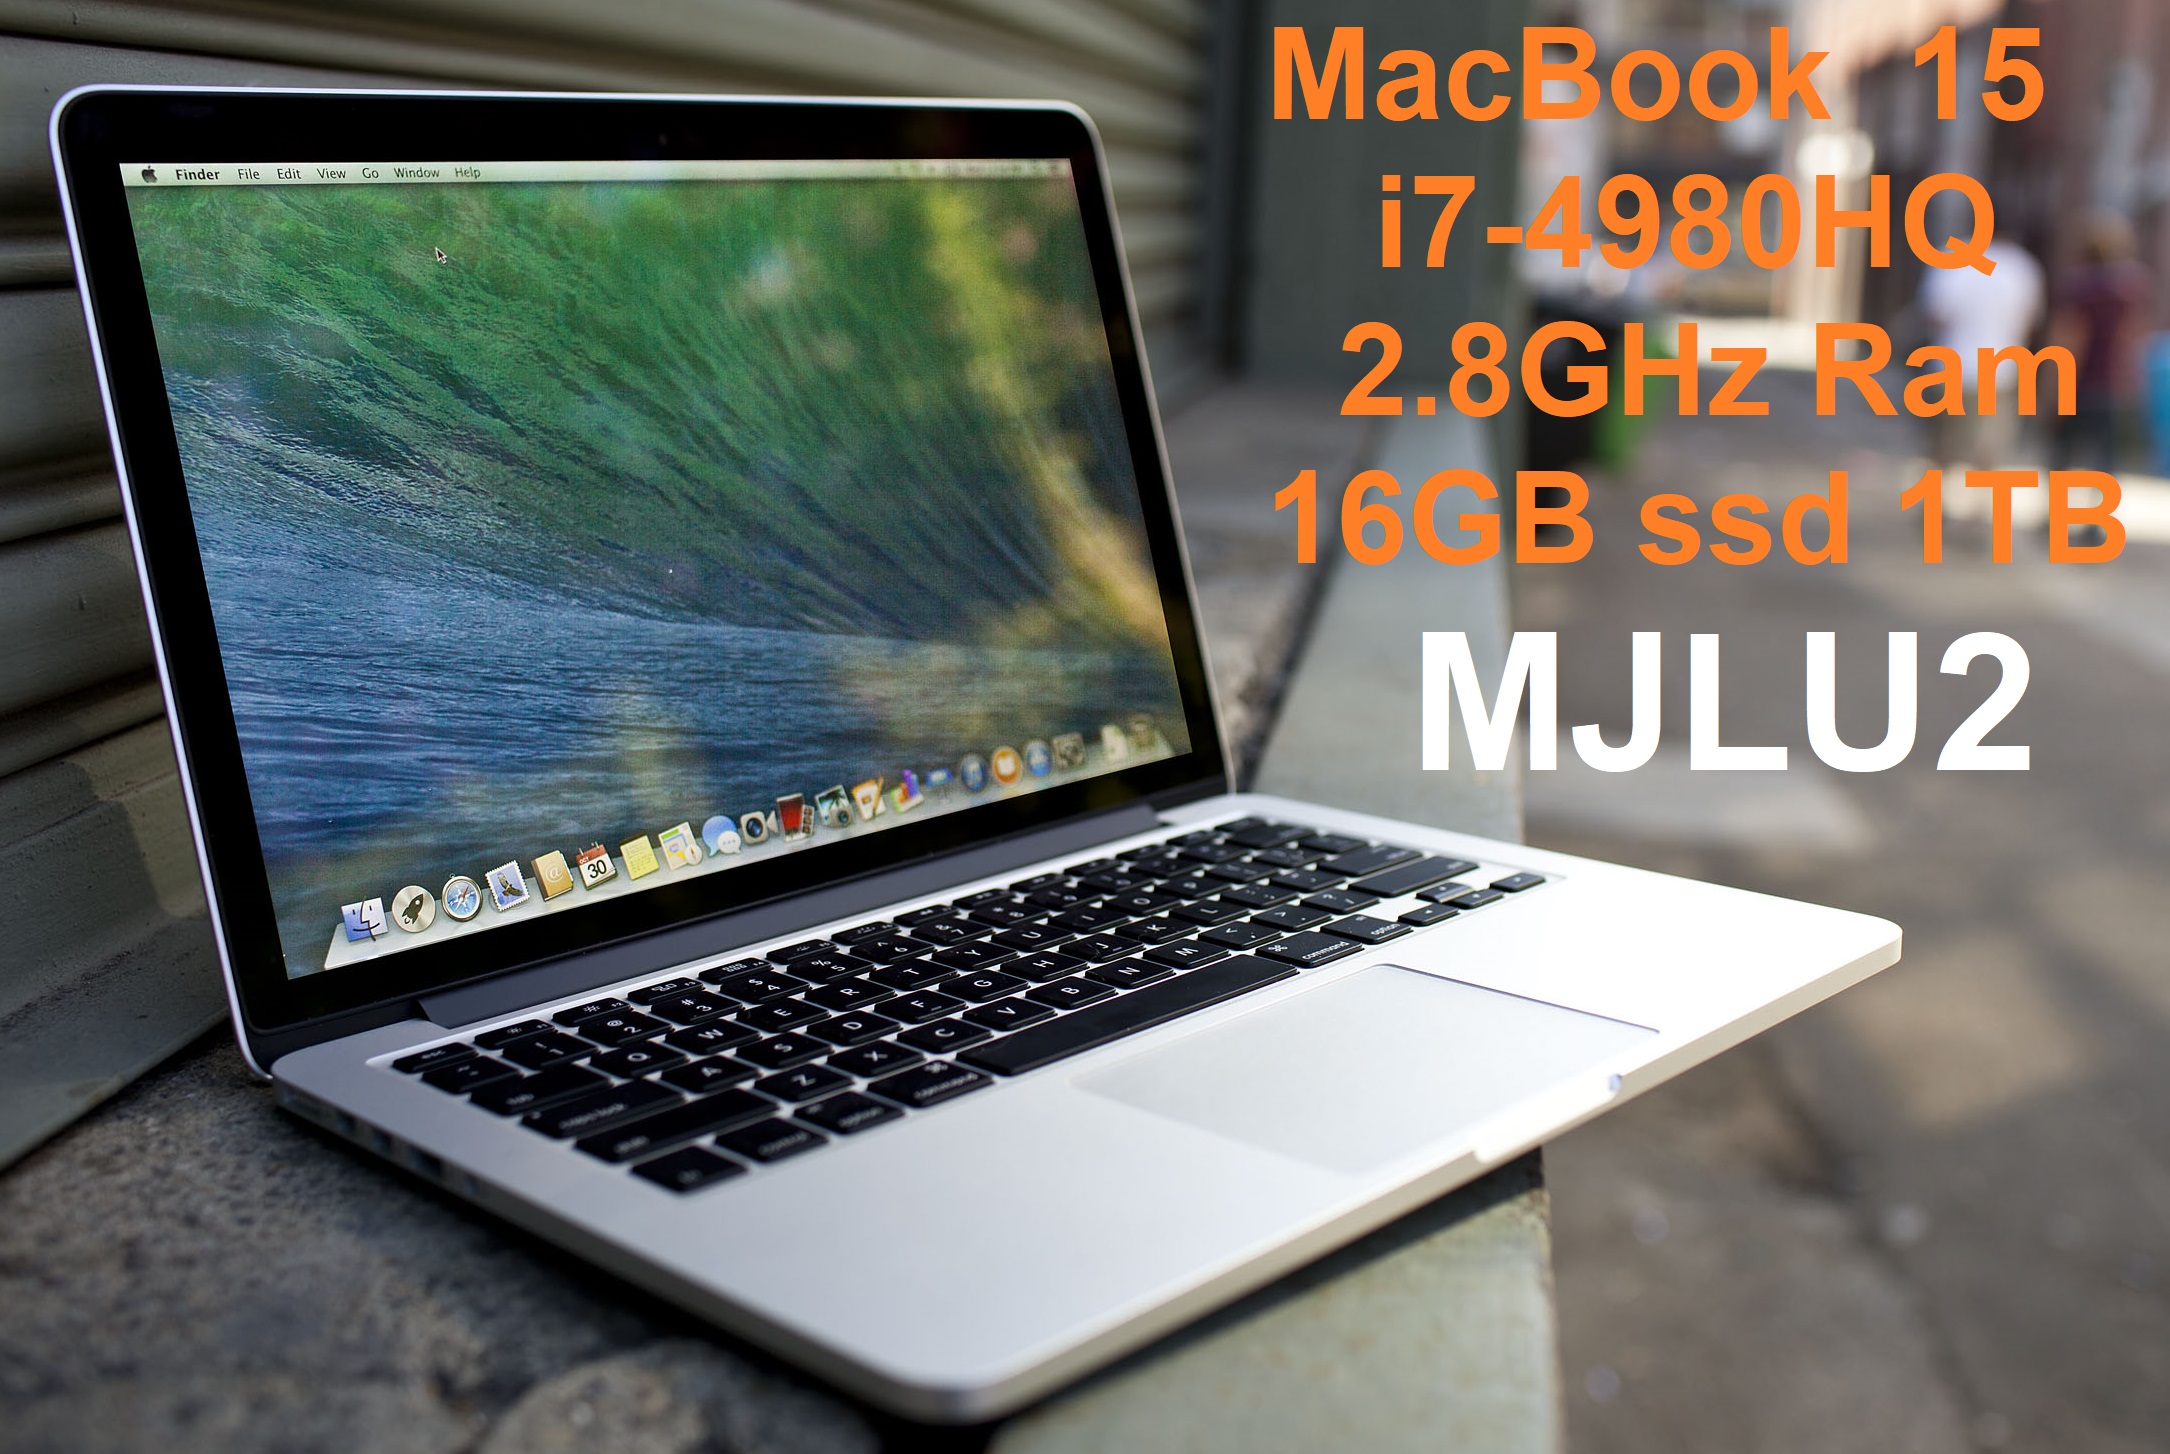 MacBook Pro 15Mid-2015 Core i7-4980HQ 2.8GHz Ram 16GB ssd 1TB